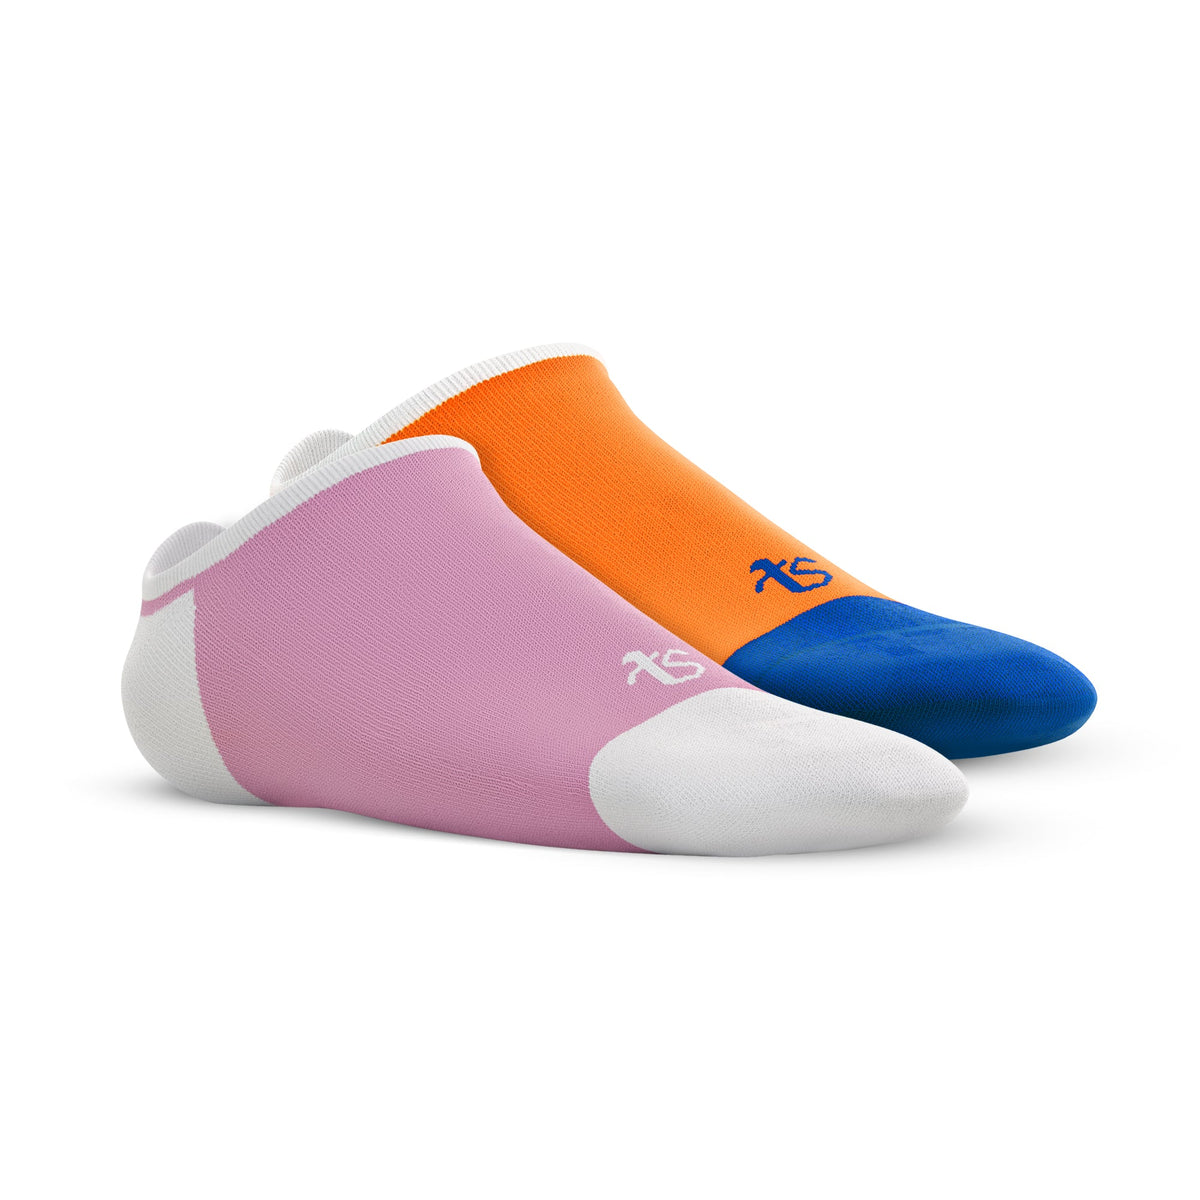 Loafer – See me – Pink, Orange – Set of 2